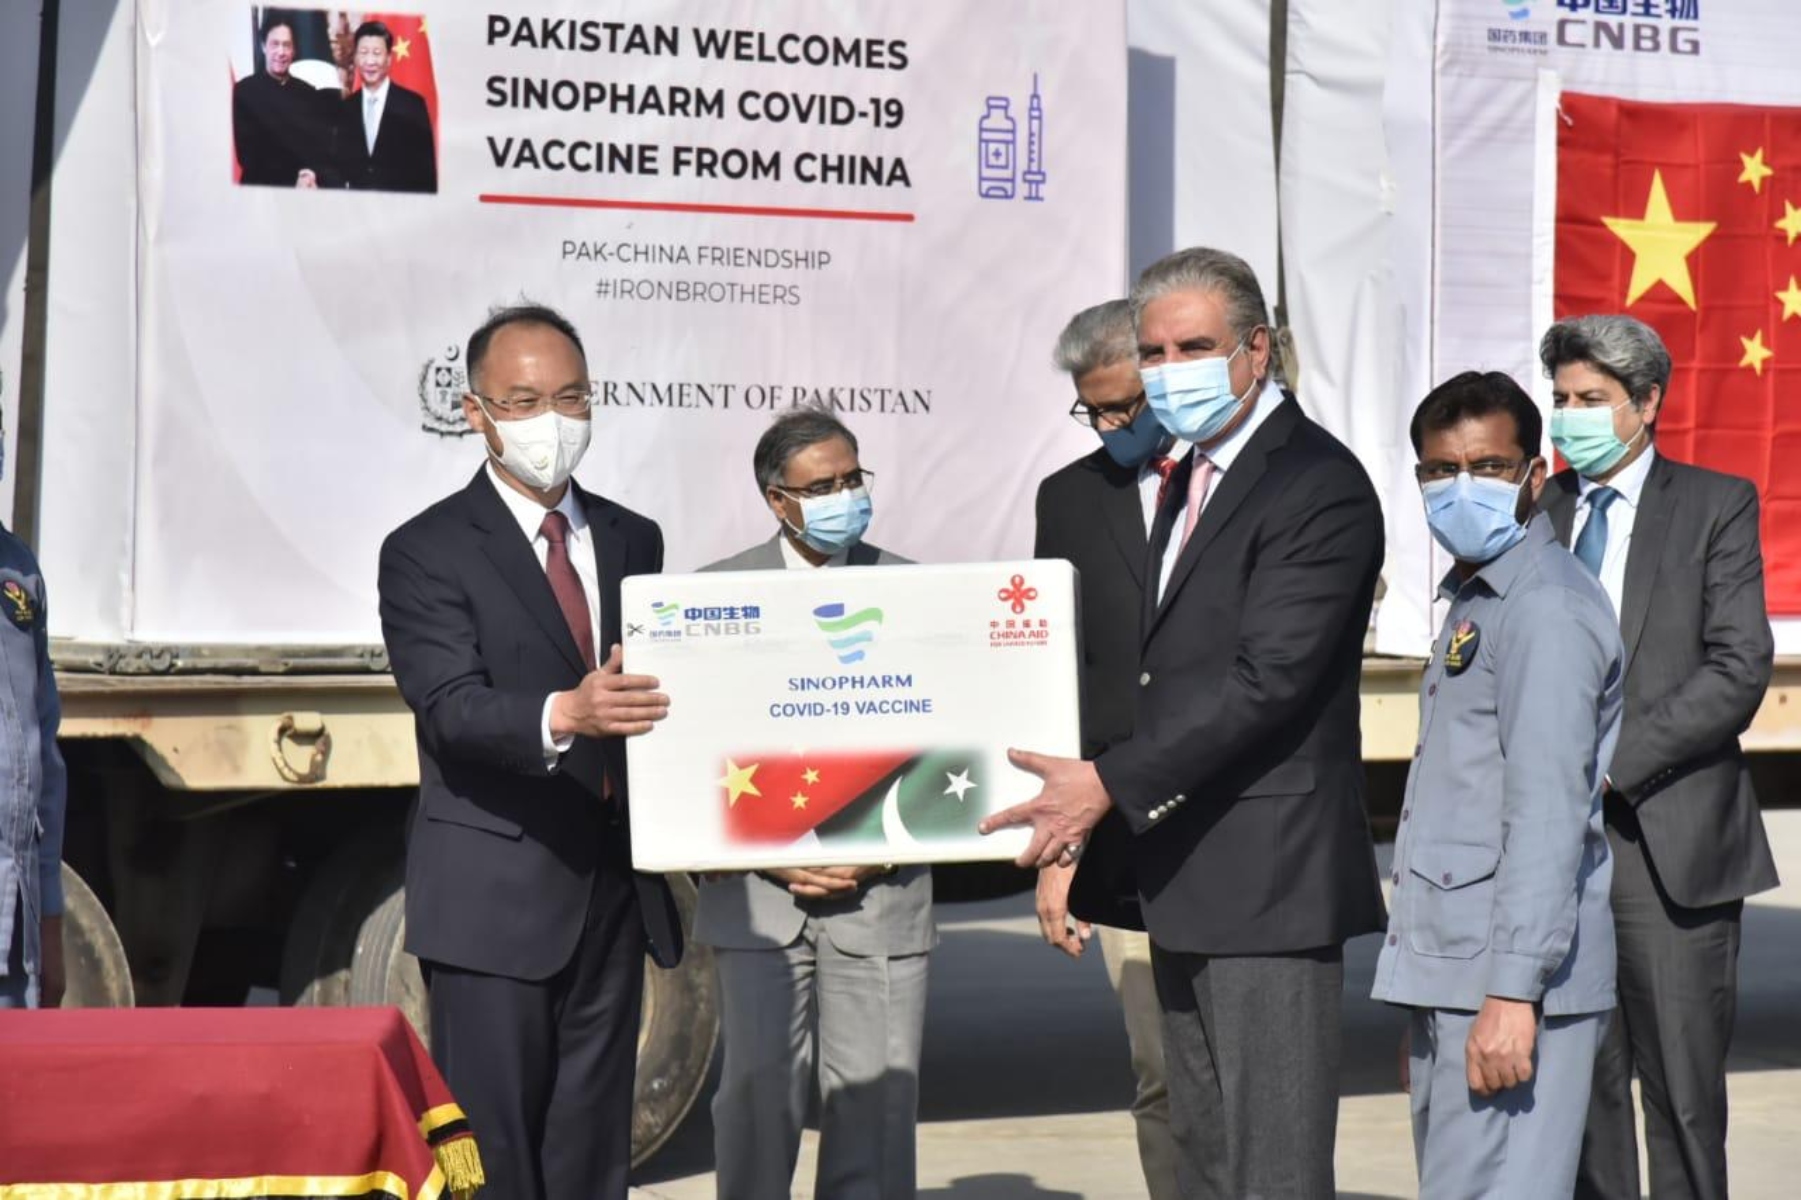 Πακιστάν- Covid-19: Έλαβε την πρώτη αποστολή εμβολίων από την Κίνα